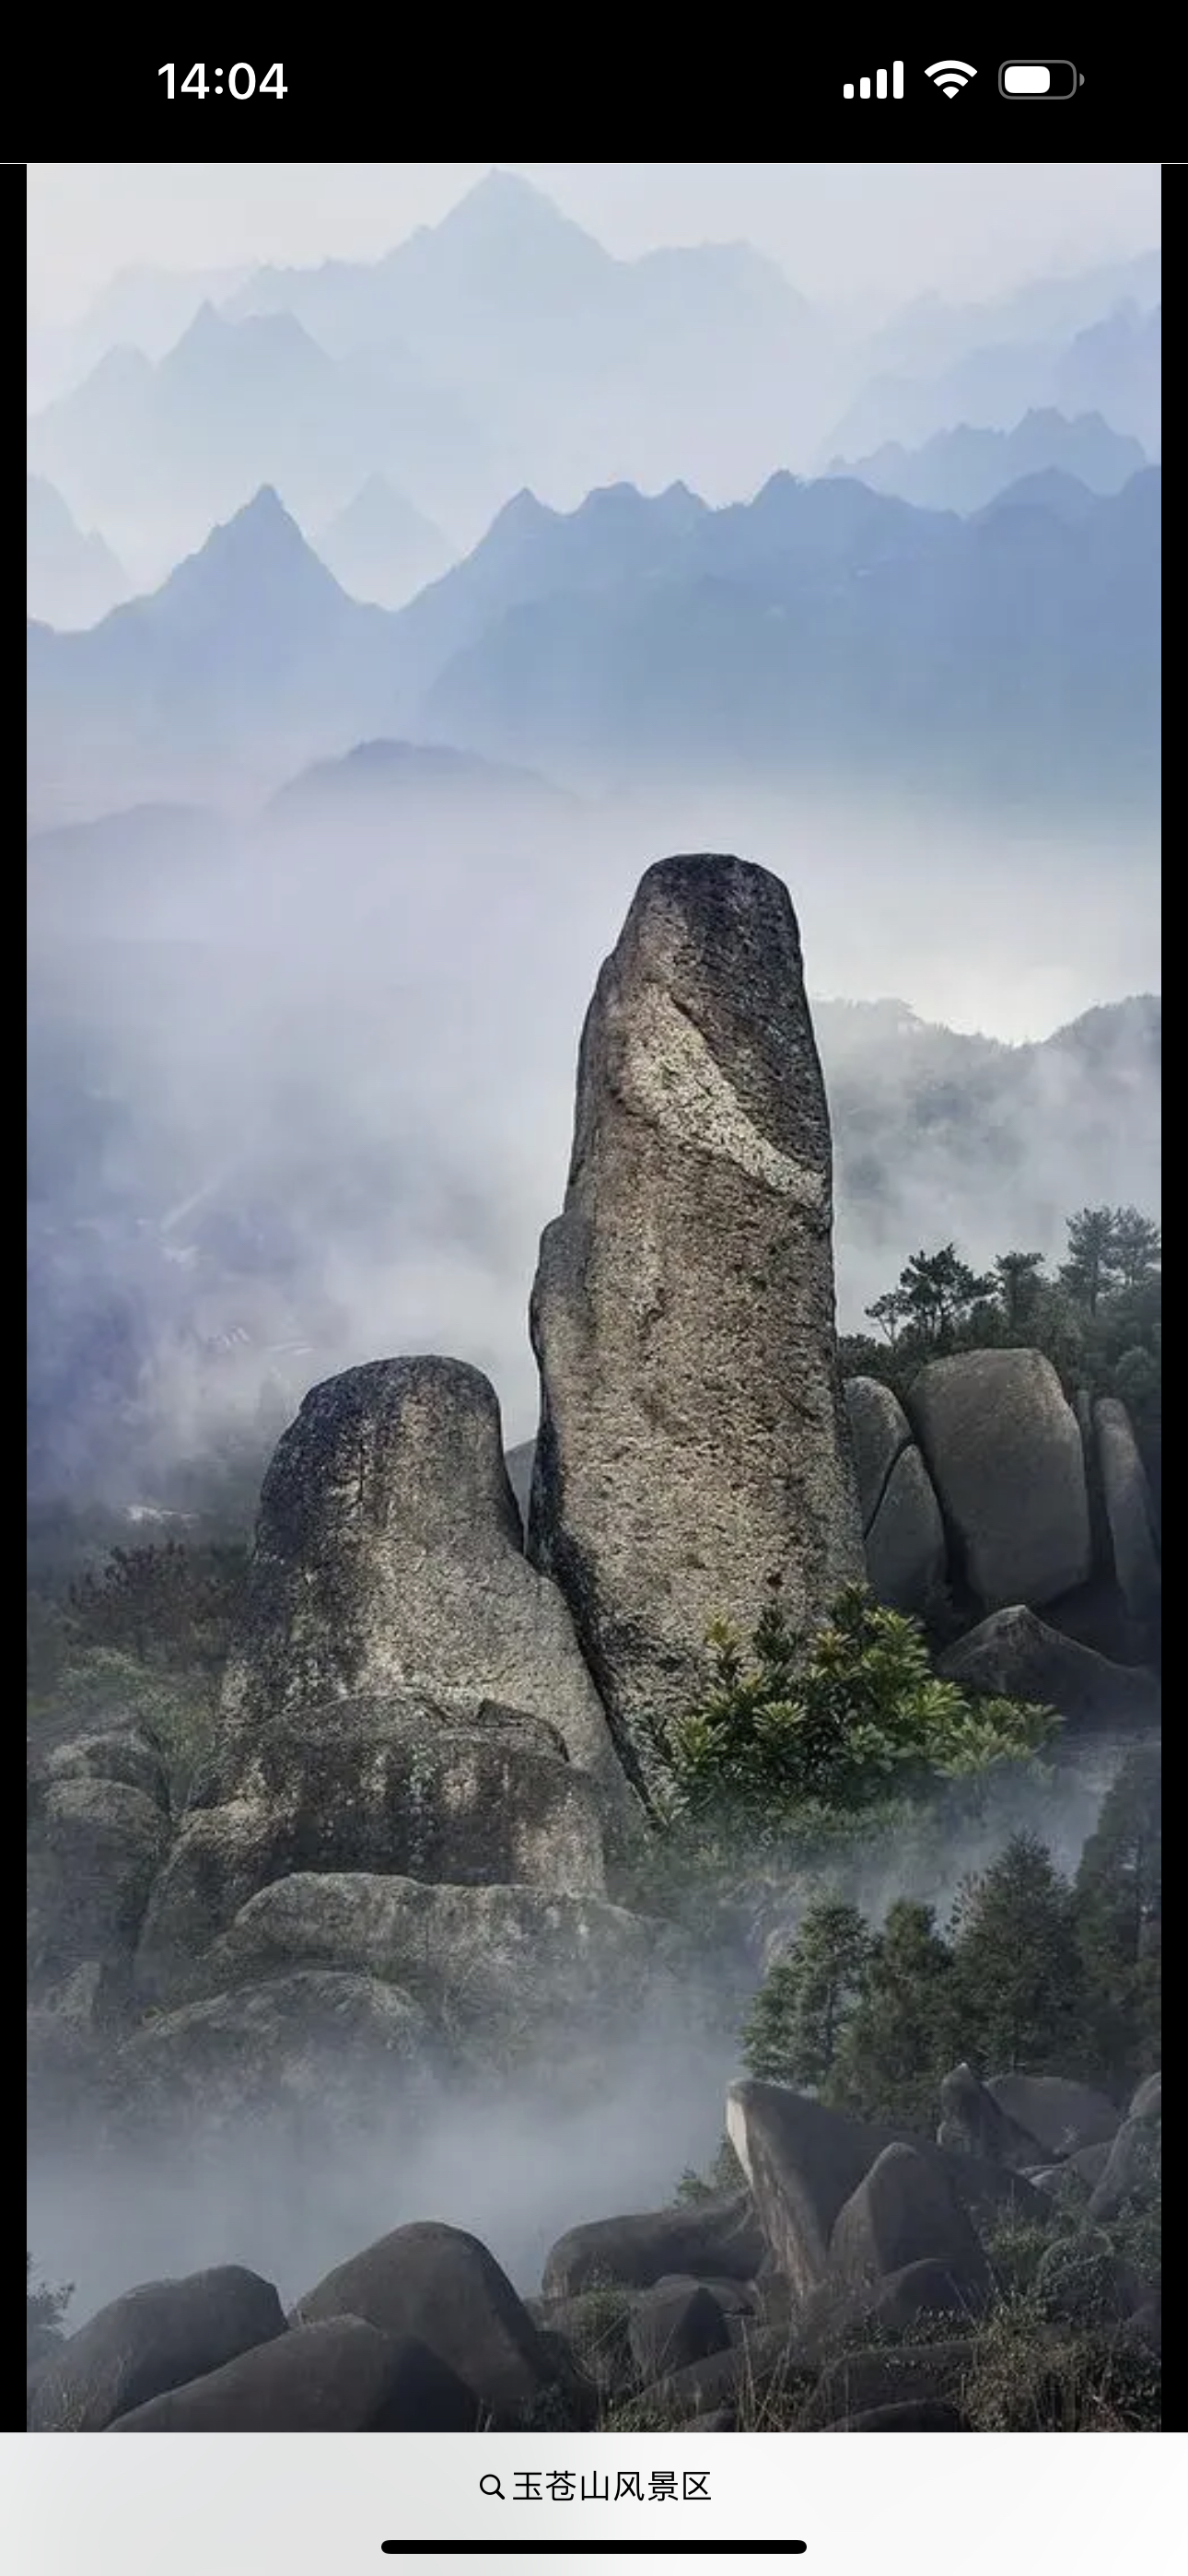 苍南玉苍山国家森林公园原名白云山，位于苍南县西北部，距县城灵溪镇32公里。景区内有形态各异的怪石组成